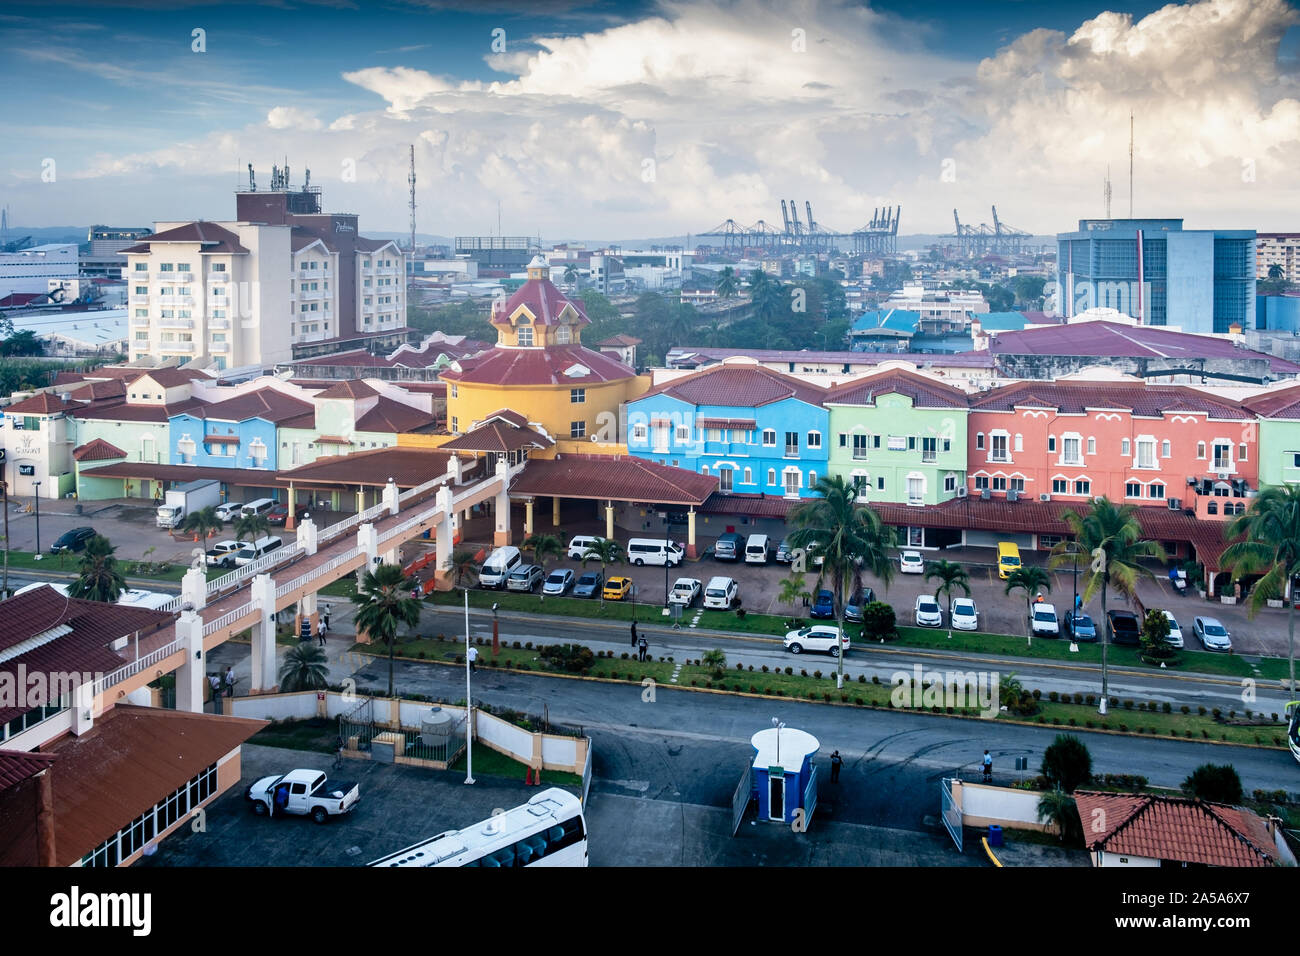 Bâtiments colorés au port de croisière Colon, Panama, Amérique Centrale Banque D'Images